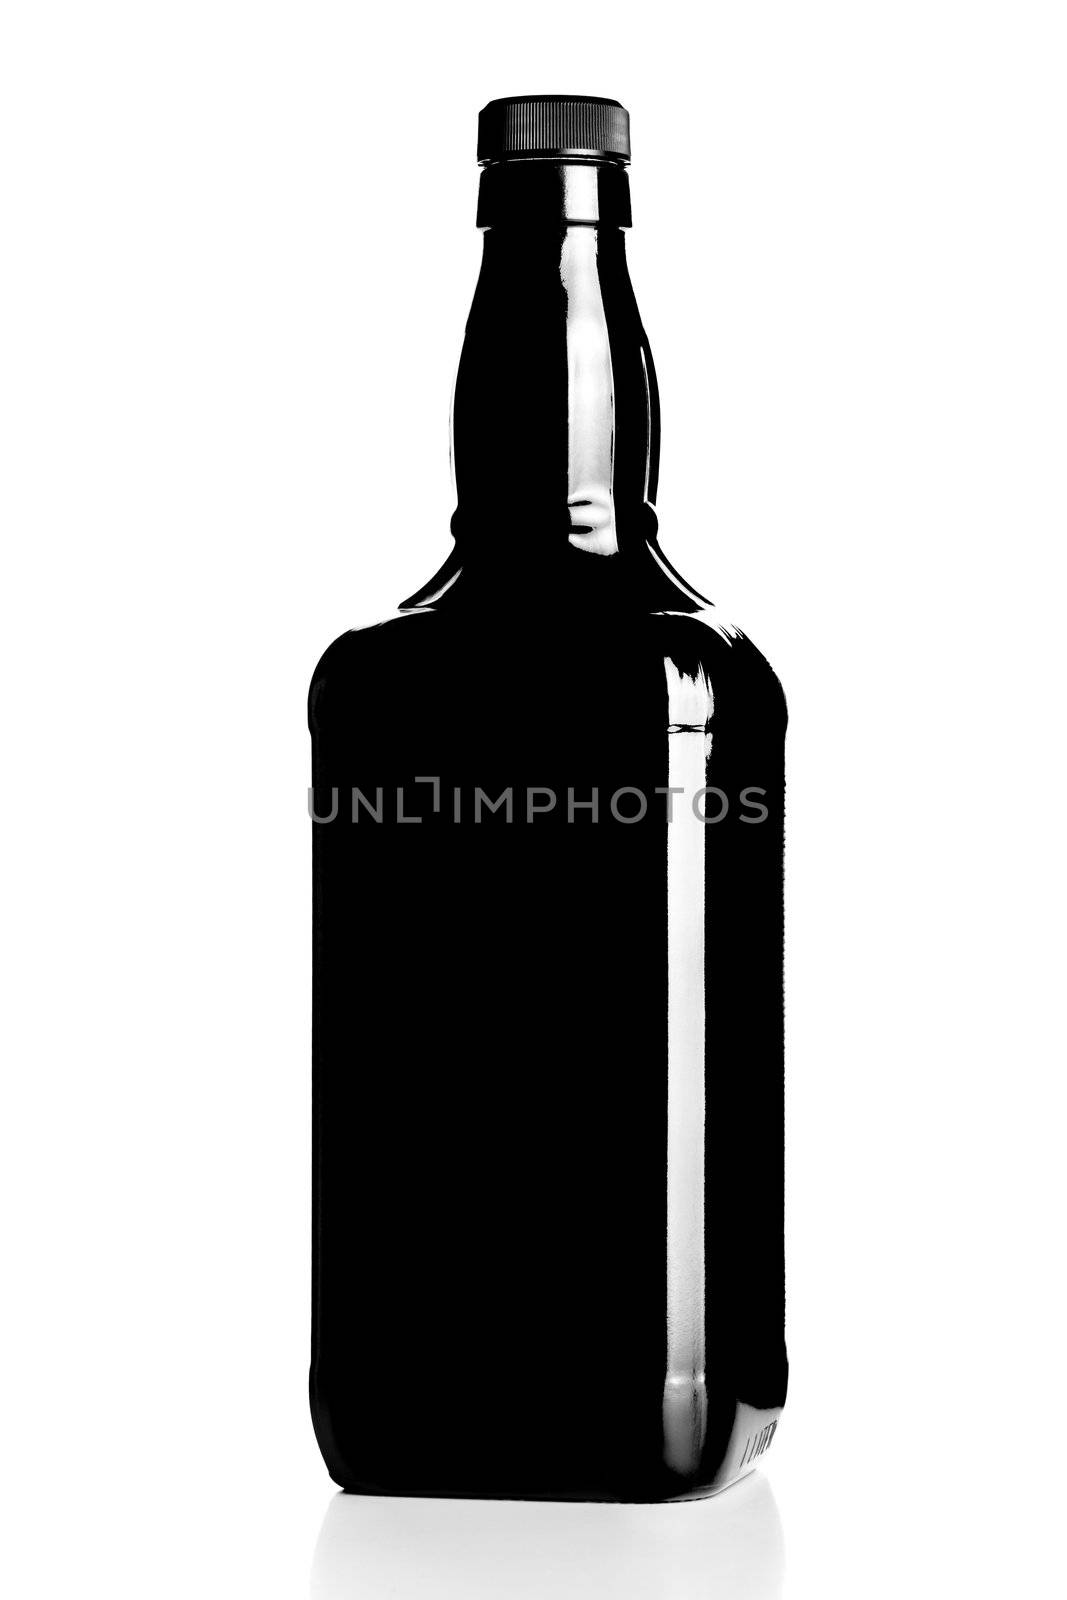 alcohol bottle silhouette, back light technique against white